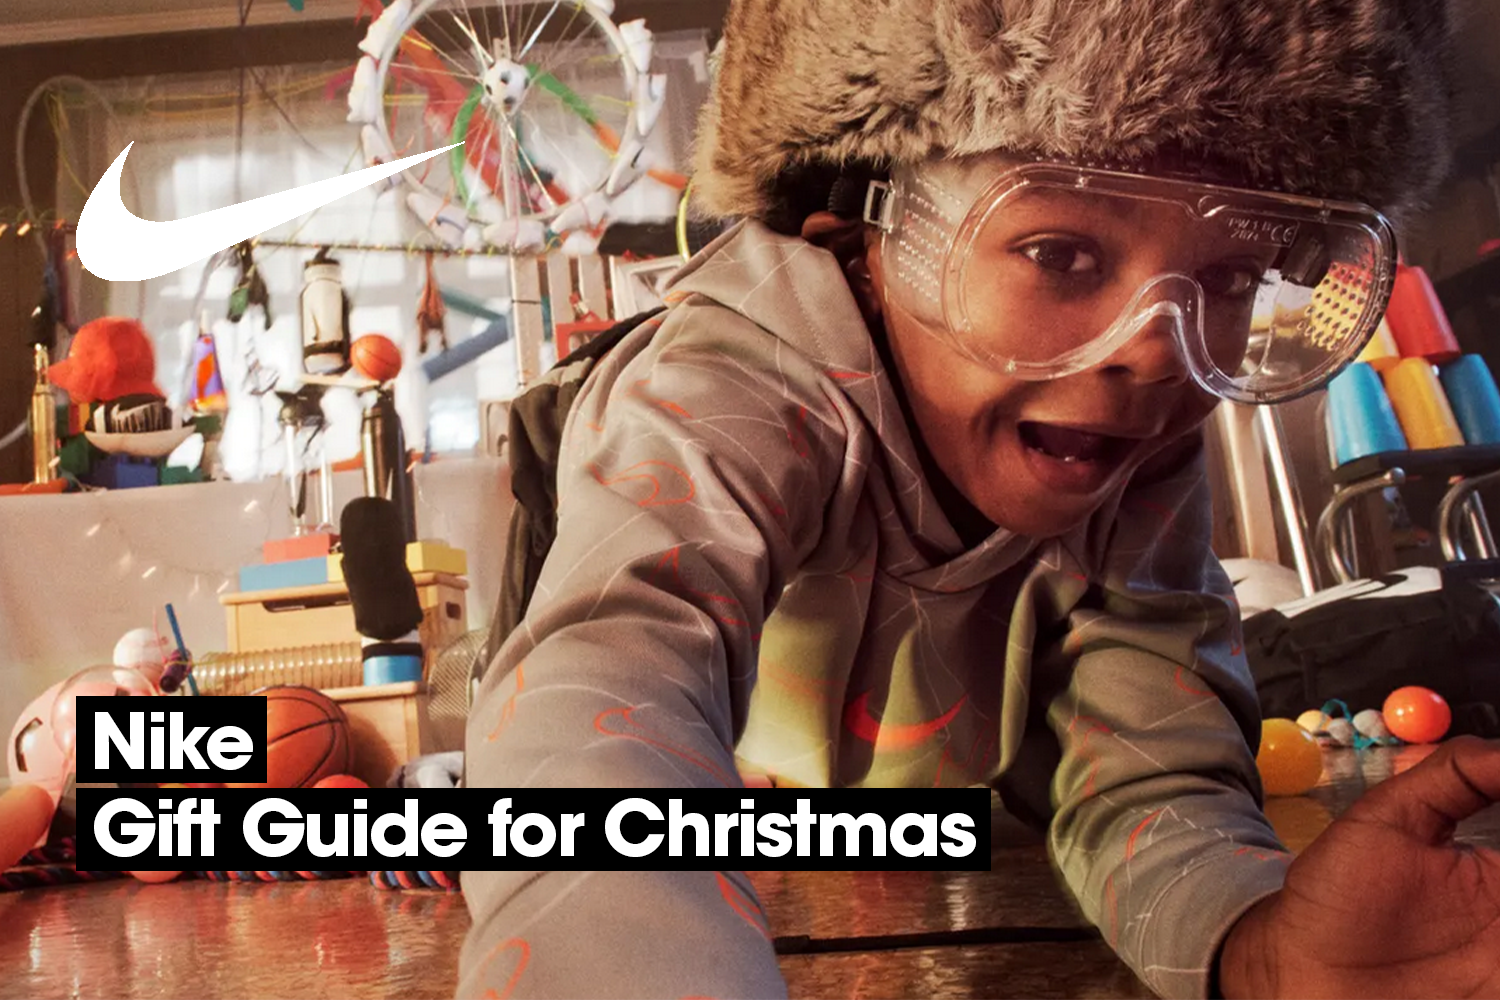 Shop jouw favoriete Christmas gifts bij Nike